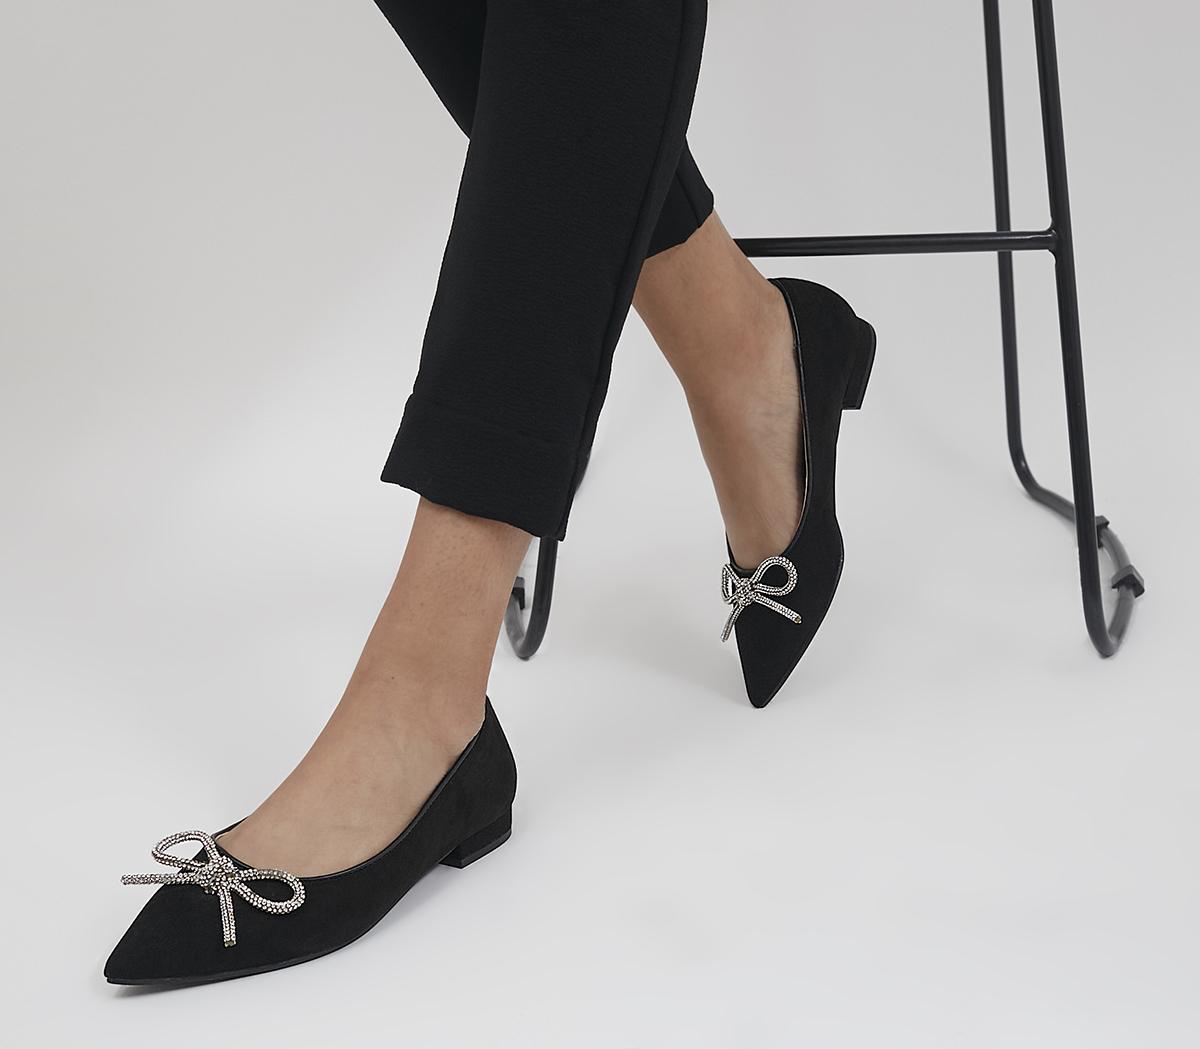 Odysseus følelsesmæssig Skygge OFFICE Fairytale Bow Flat Pumps Black Embellished - Flat Shoes for Women